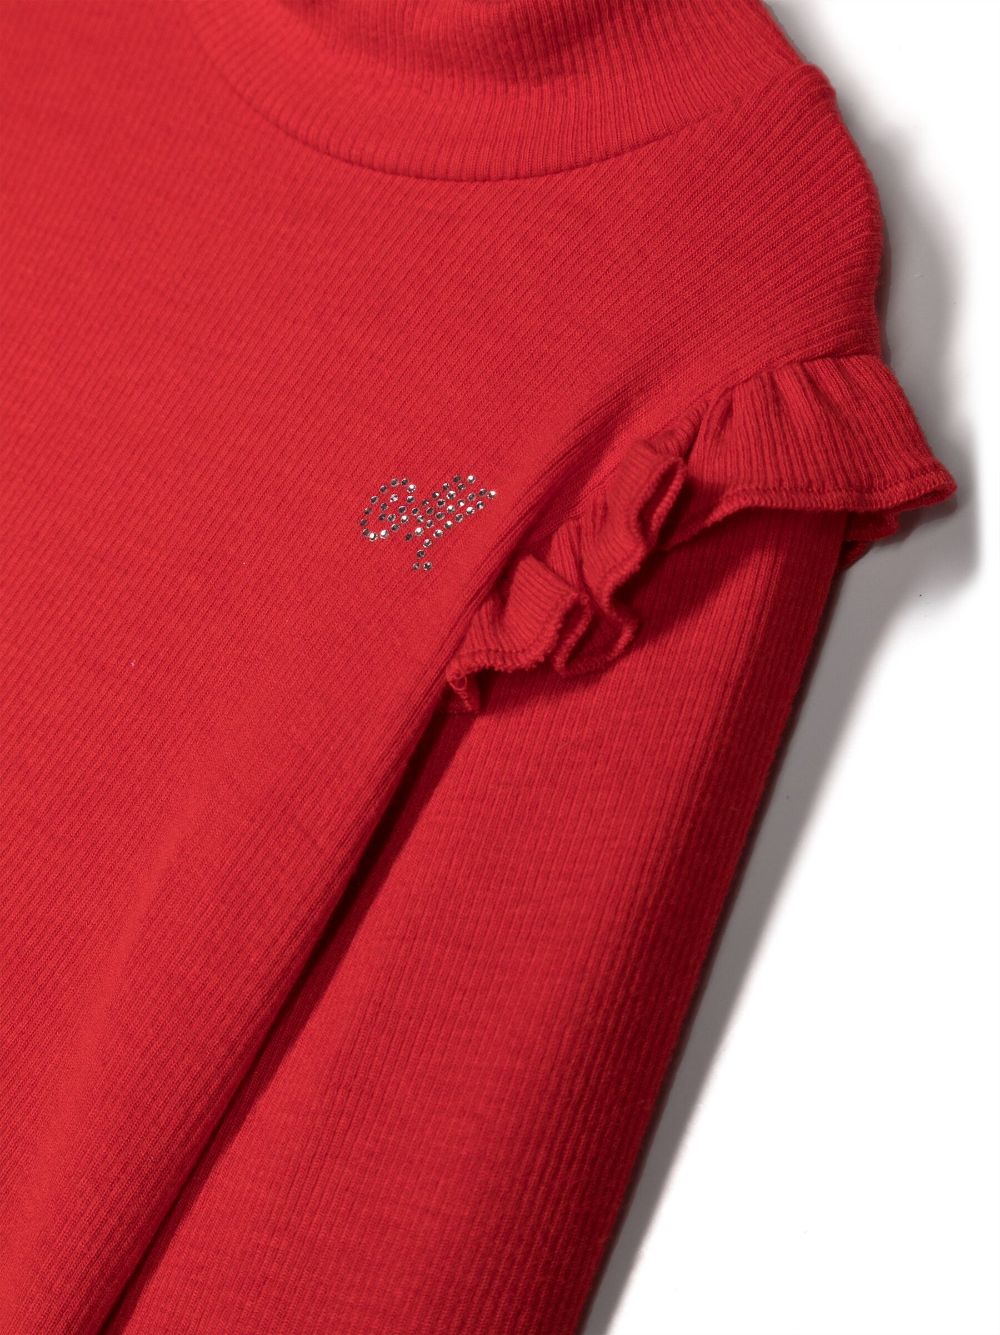 T-shirt rossa neonata con ruches e maniche lunghe